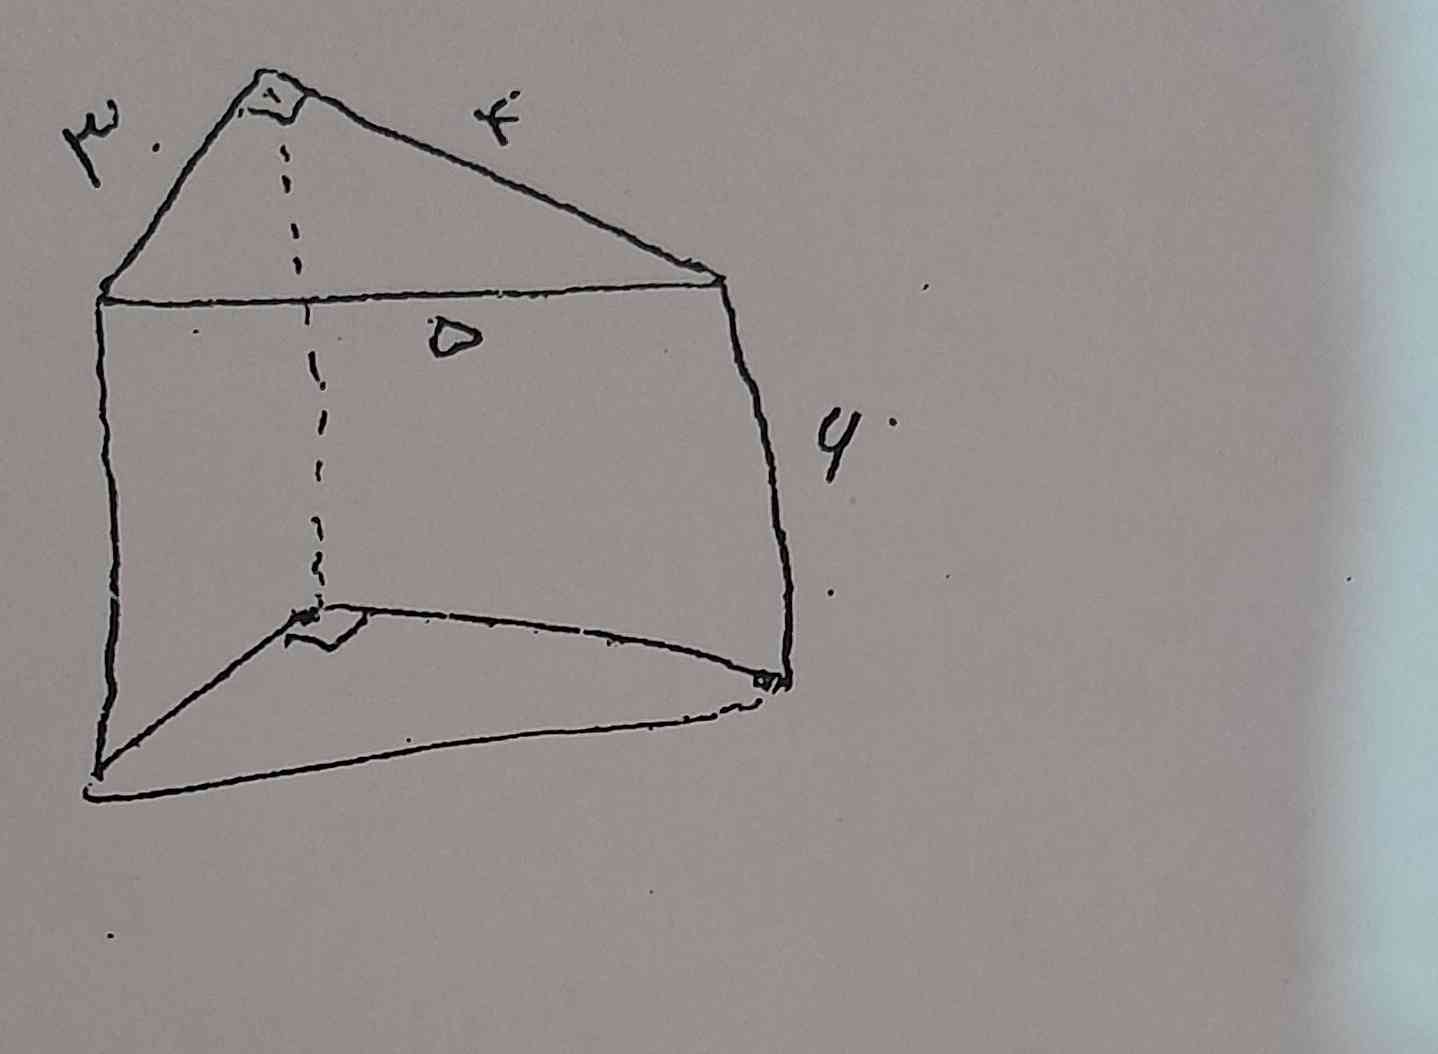 مساحت جانبی و مساحت کل شکل را حساب کنید با نوشتن فرمول
تاج میدم